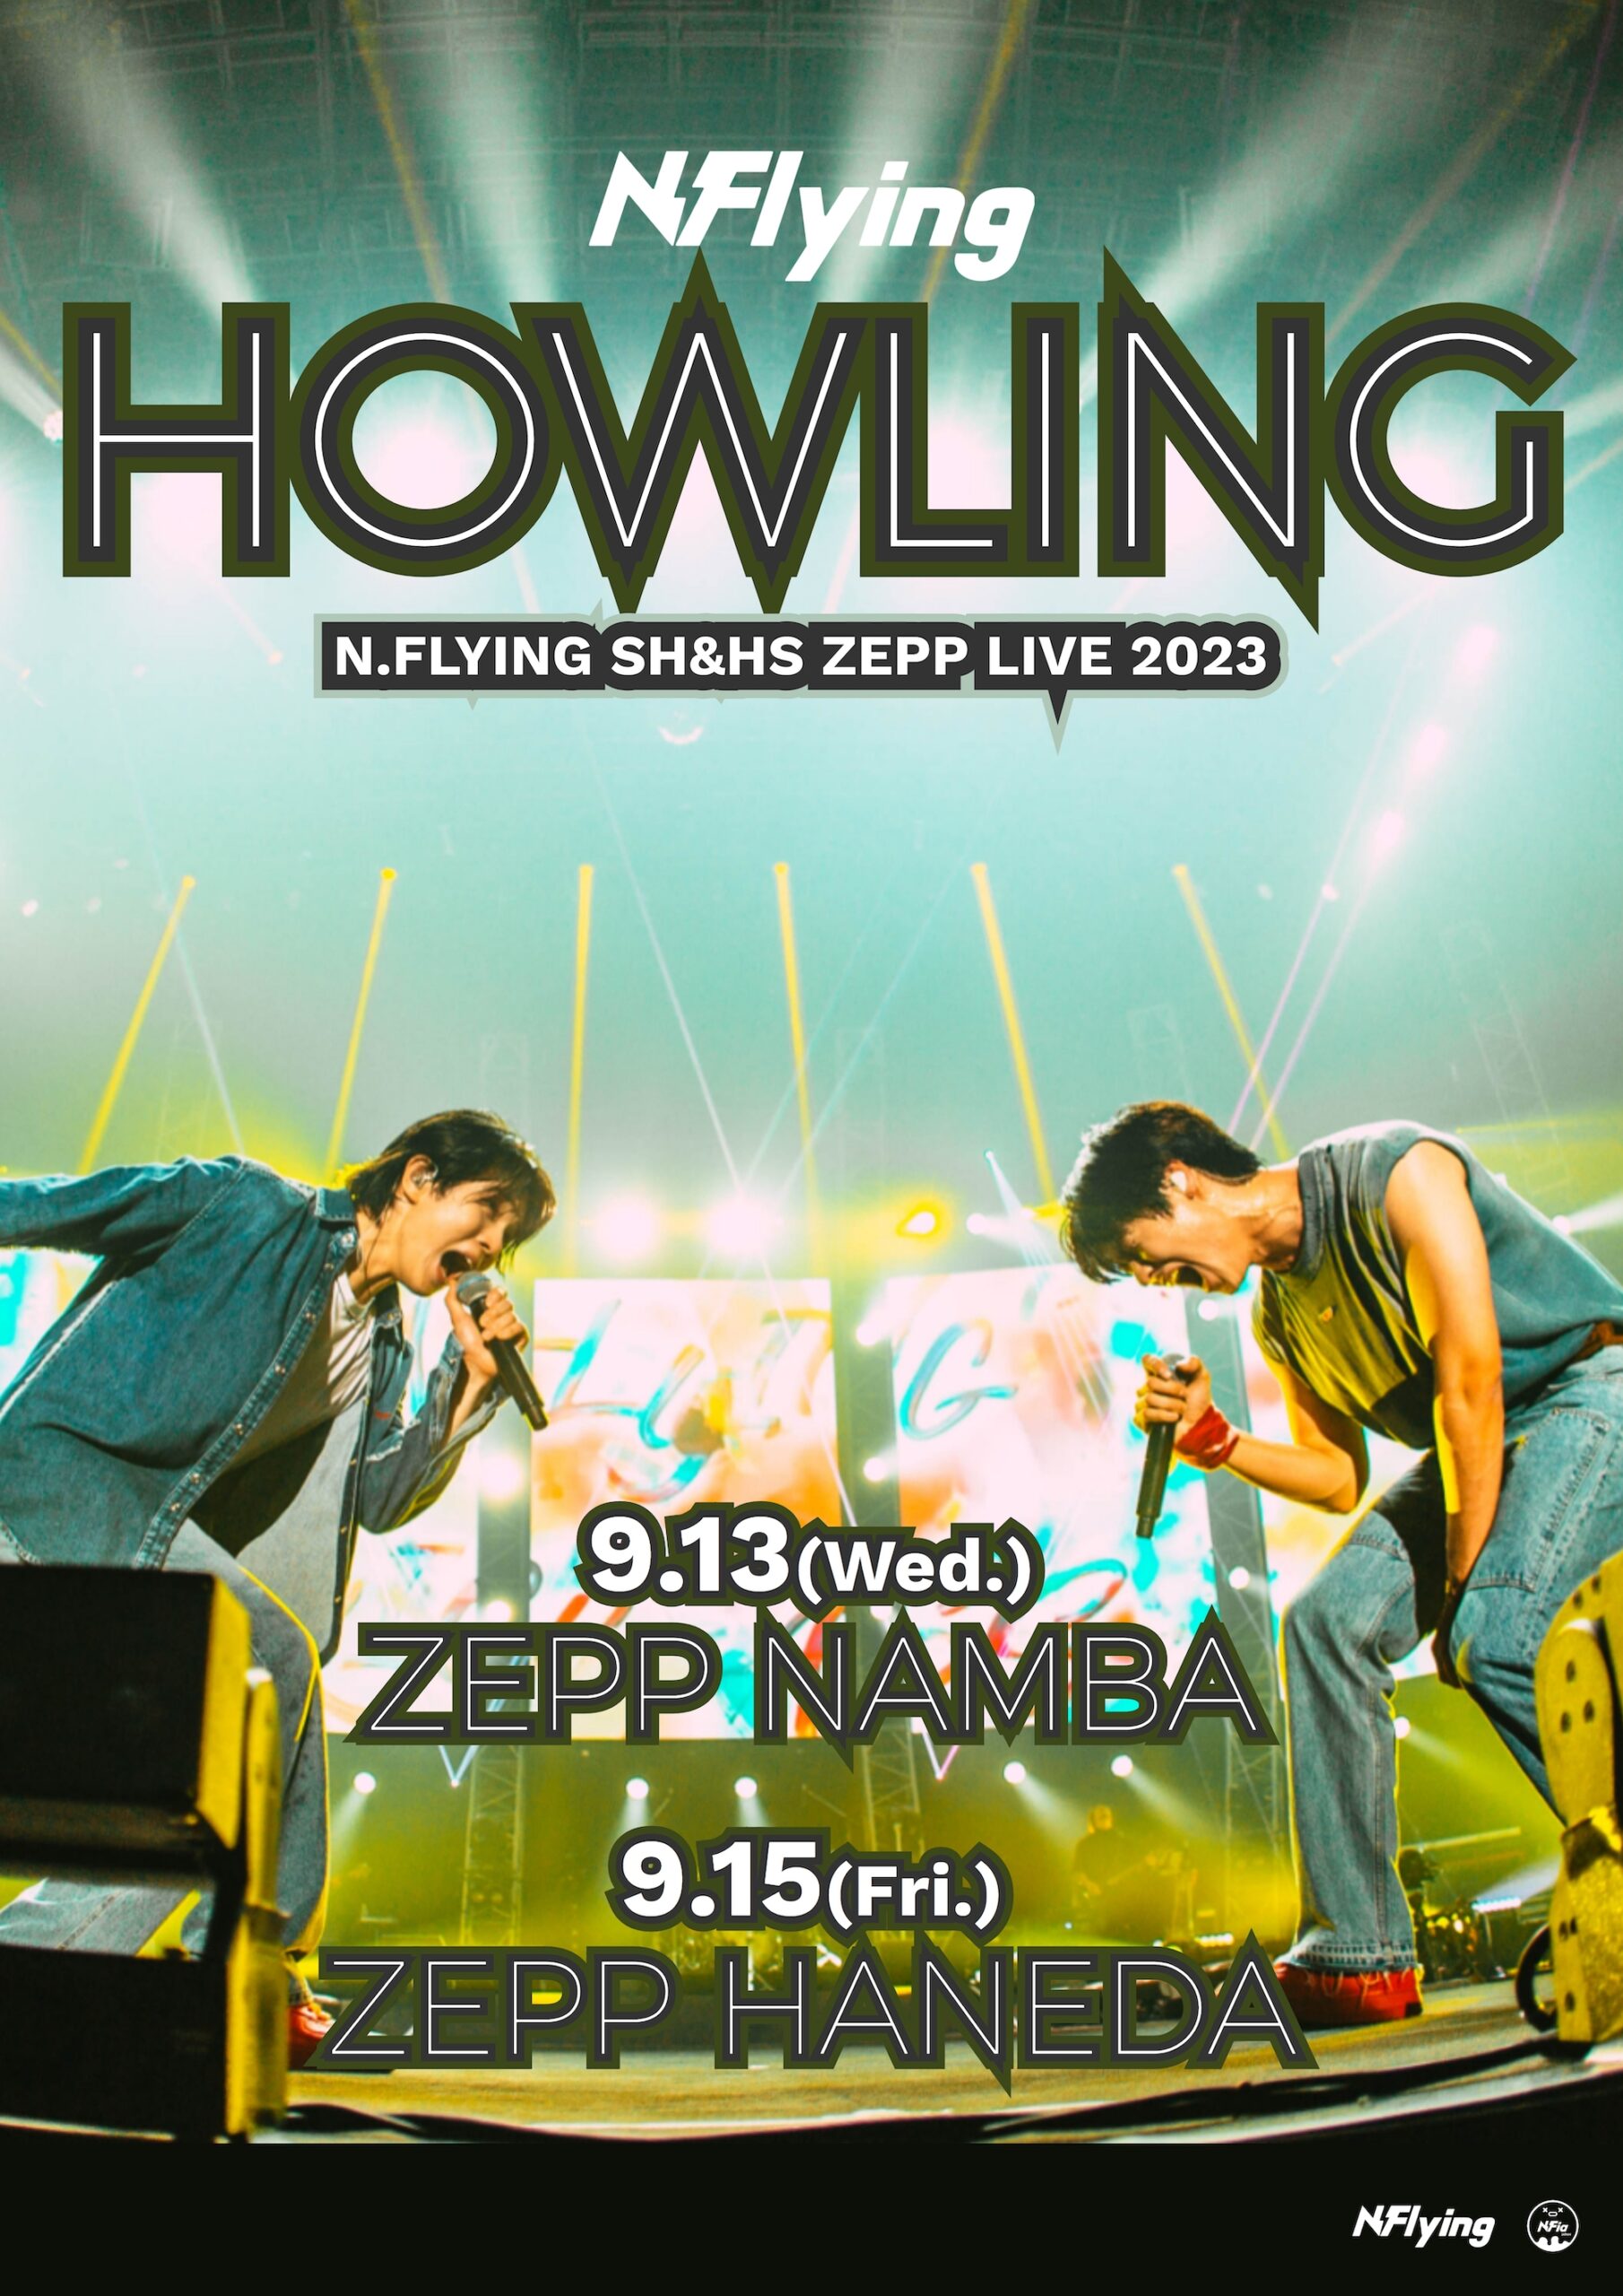 N.Flying SH&HS ZEPP LIVE 2023 “HOWLING”＜大阪＞